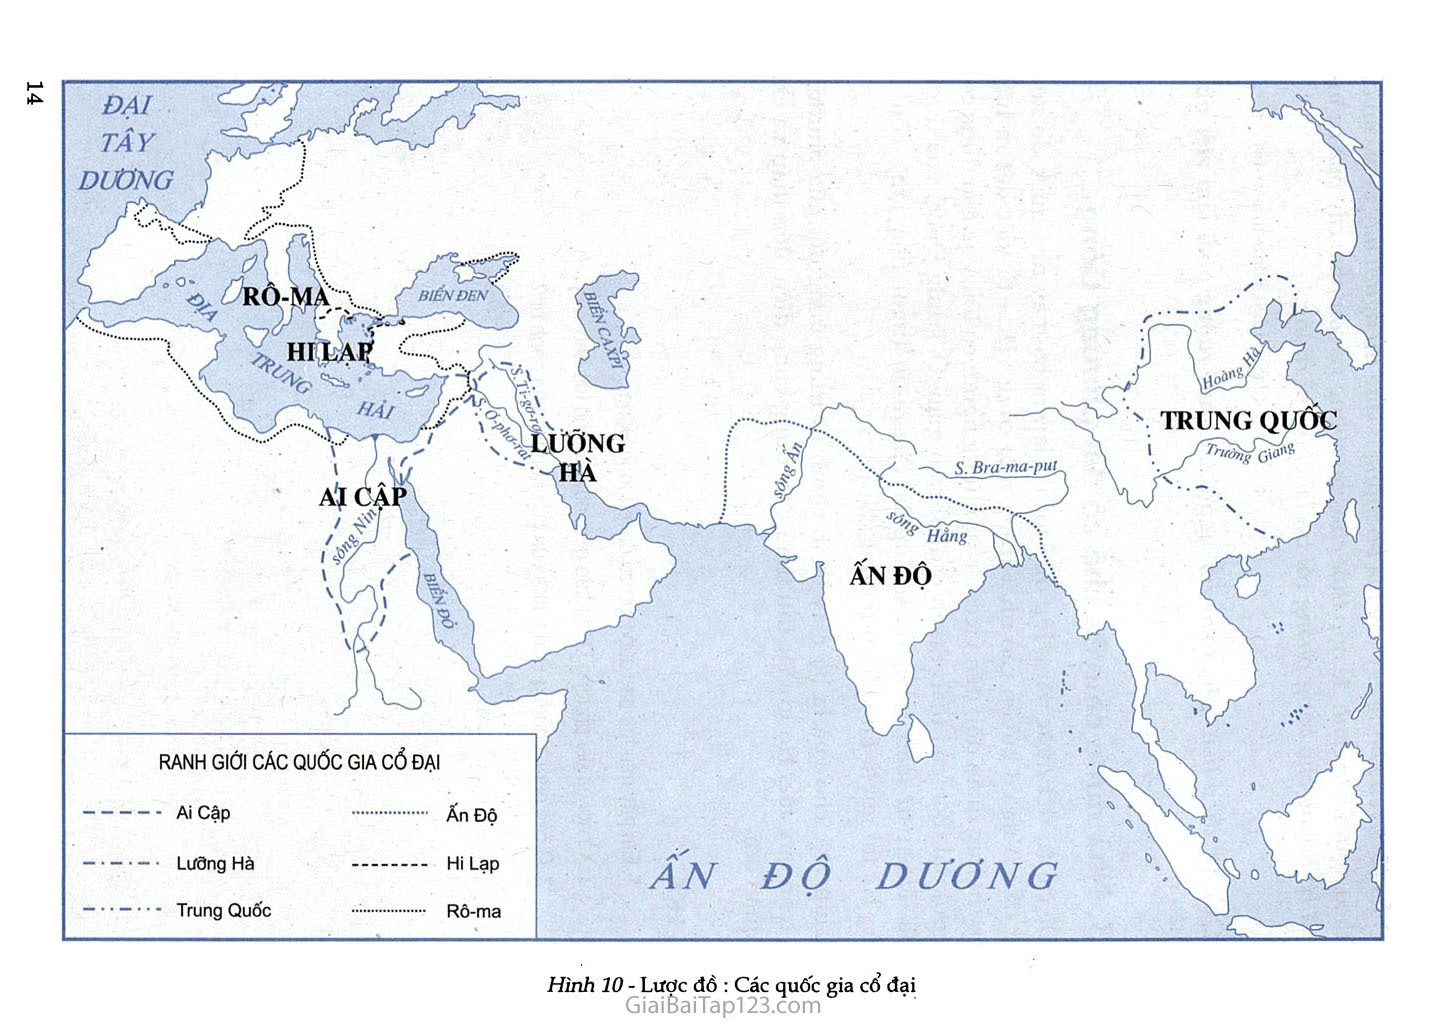 Bài 4 - Các quốc gia cổ đại phương Đông (1 tiết) trang 4